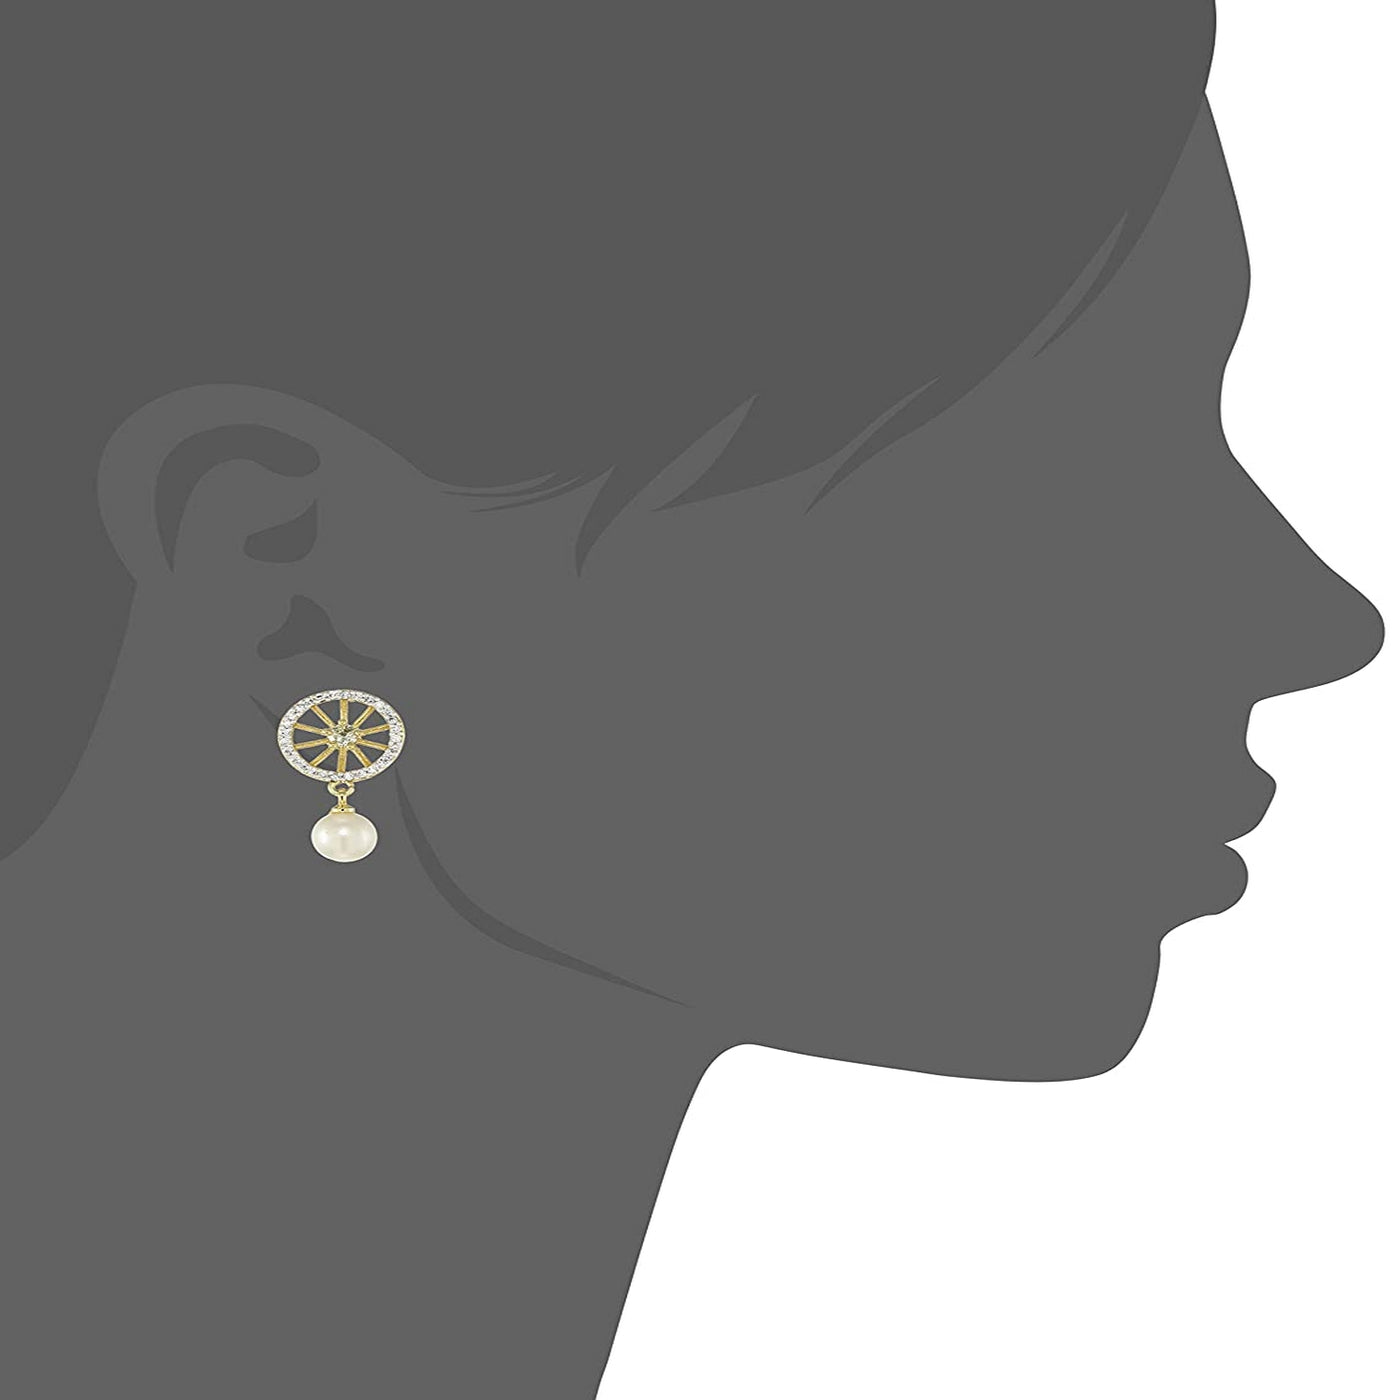 Estele Gold Plated American Diamond Sapphire Wheel Pearl Stud Earrings for women